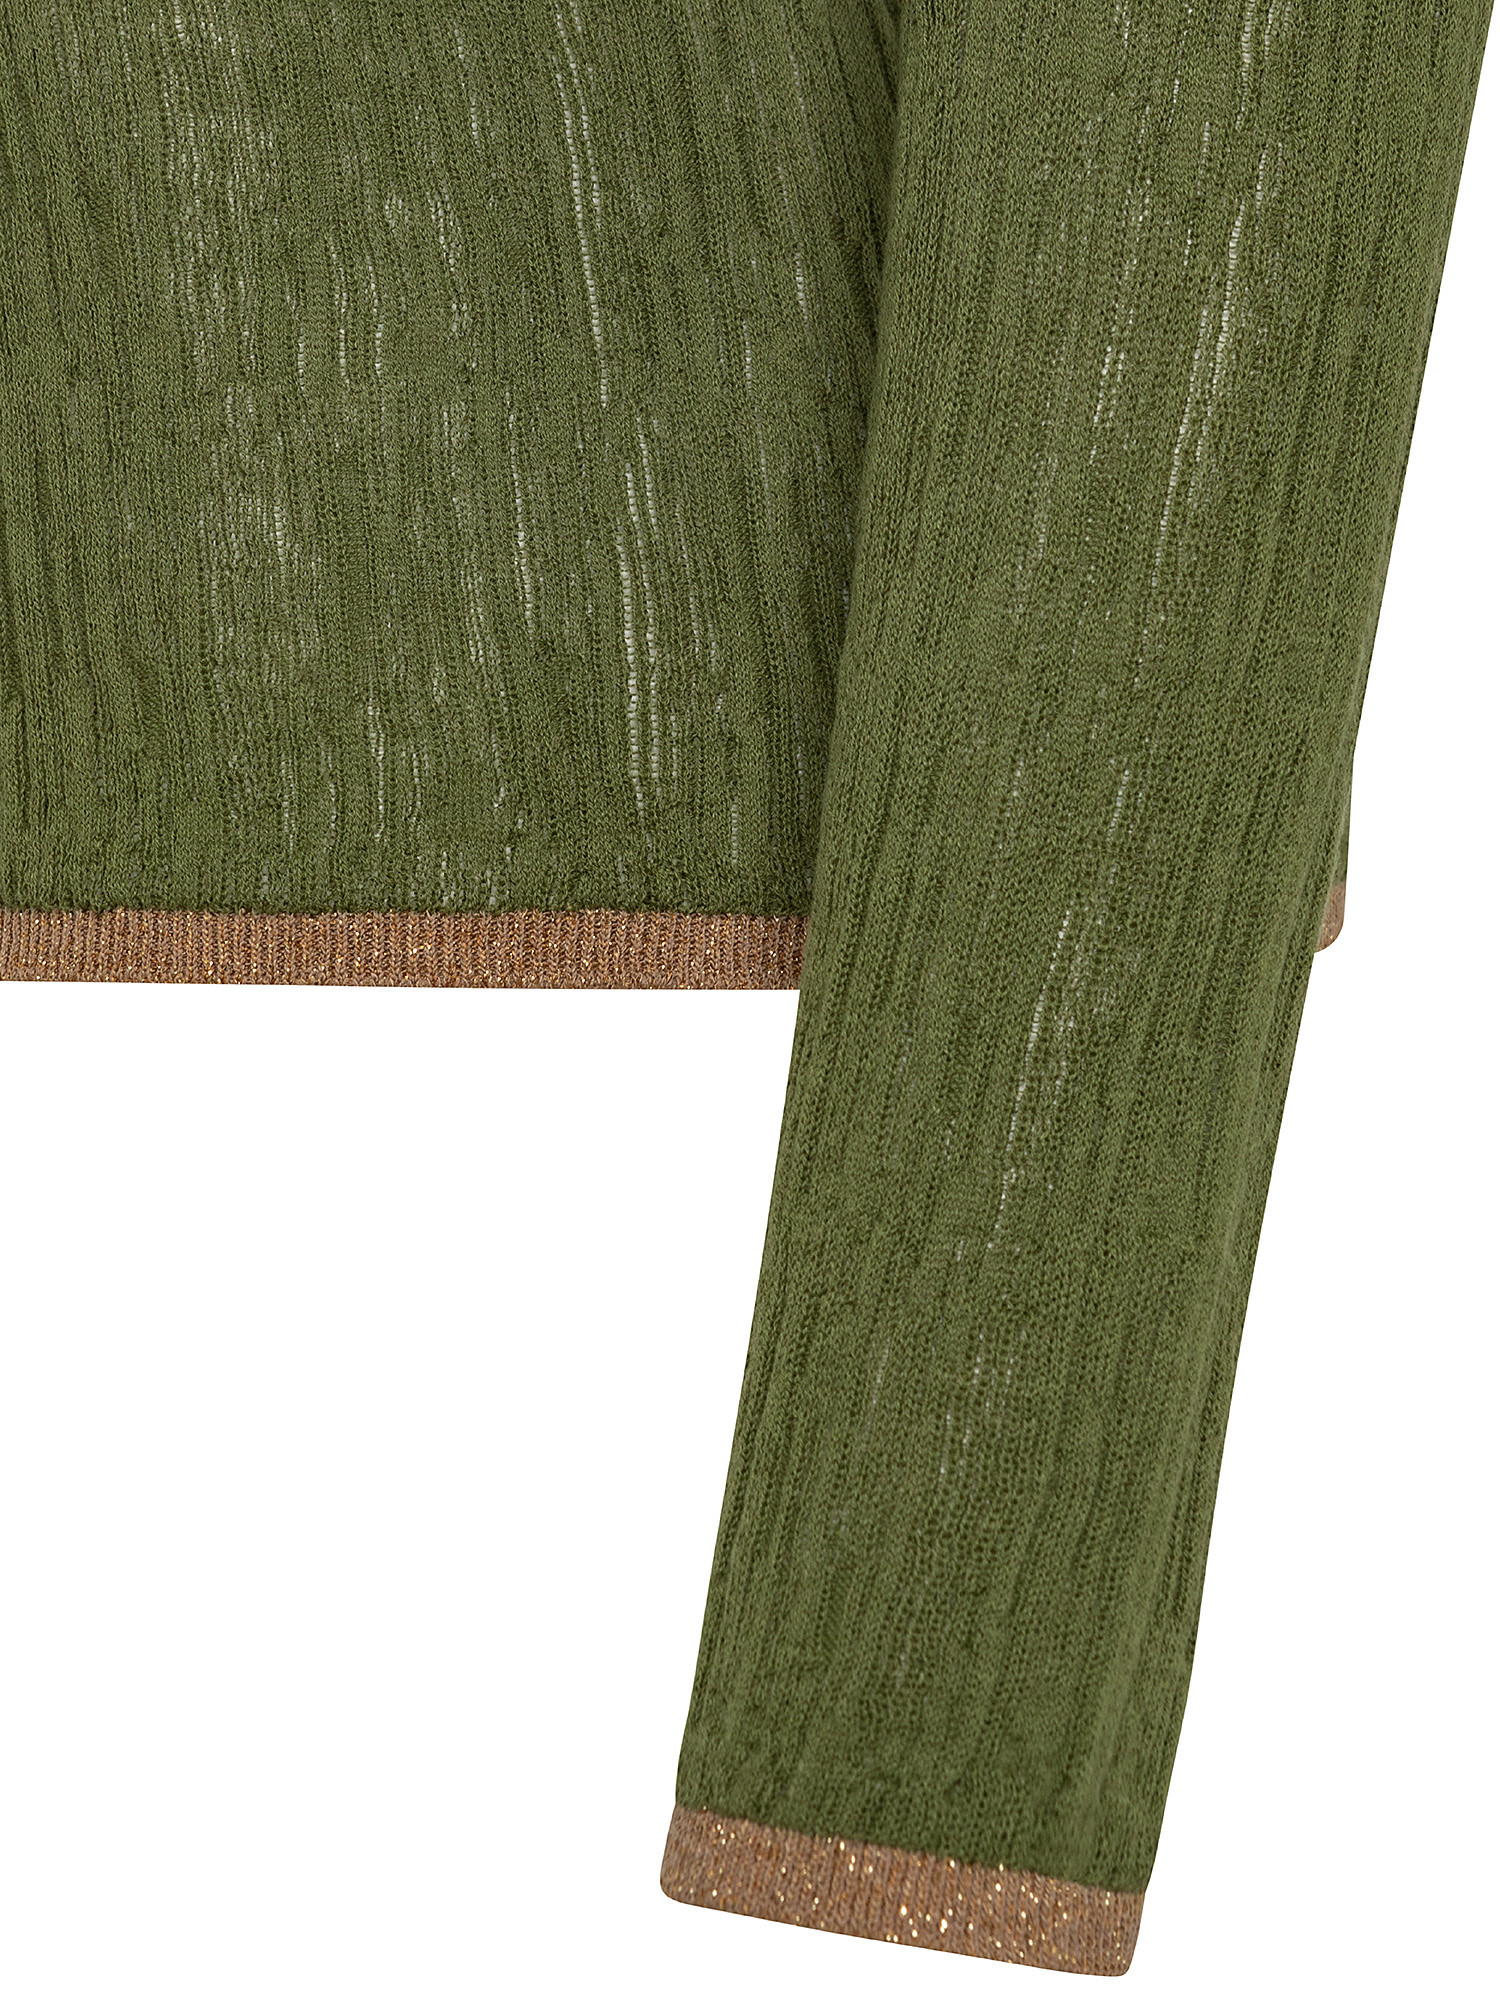 Maglia Abilene in filato di cotone leggero, Verde, large